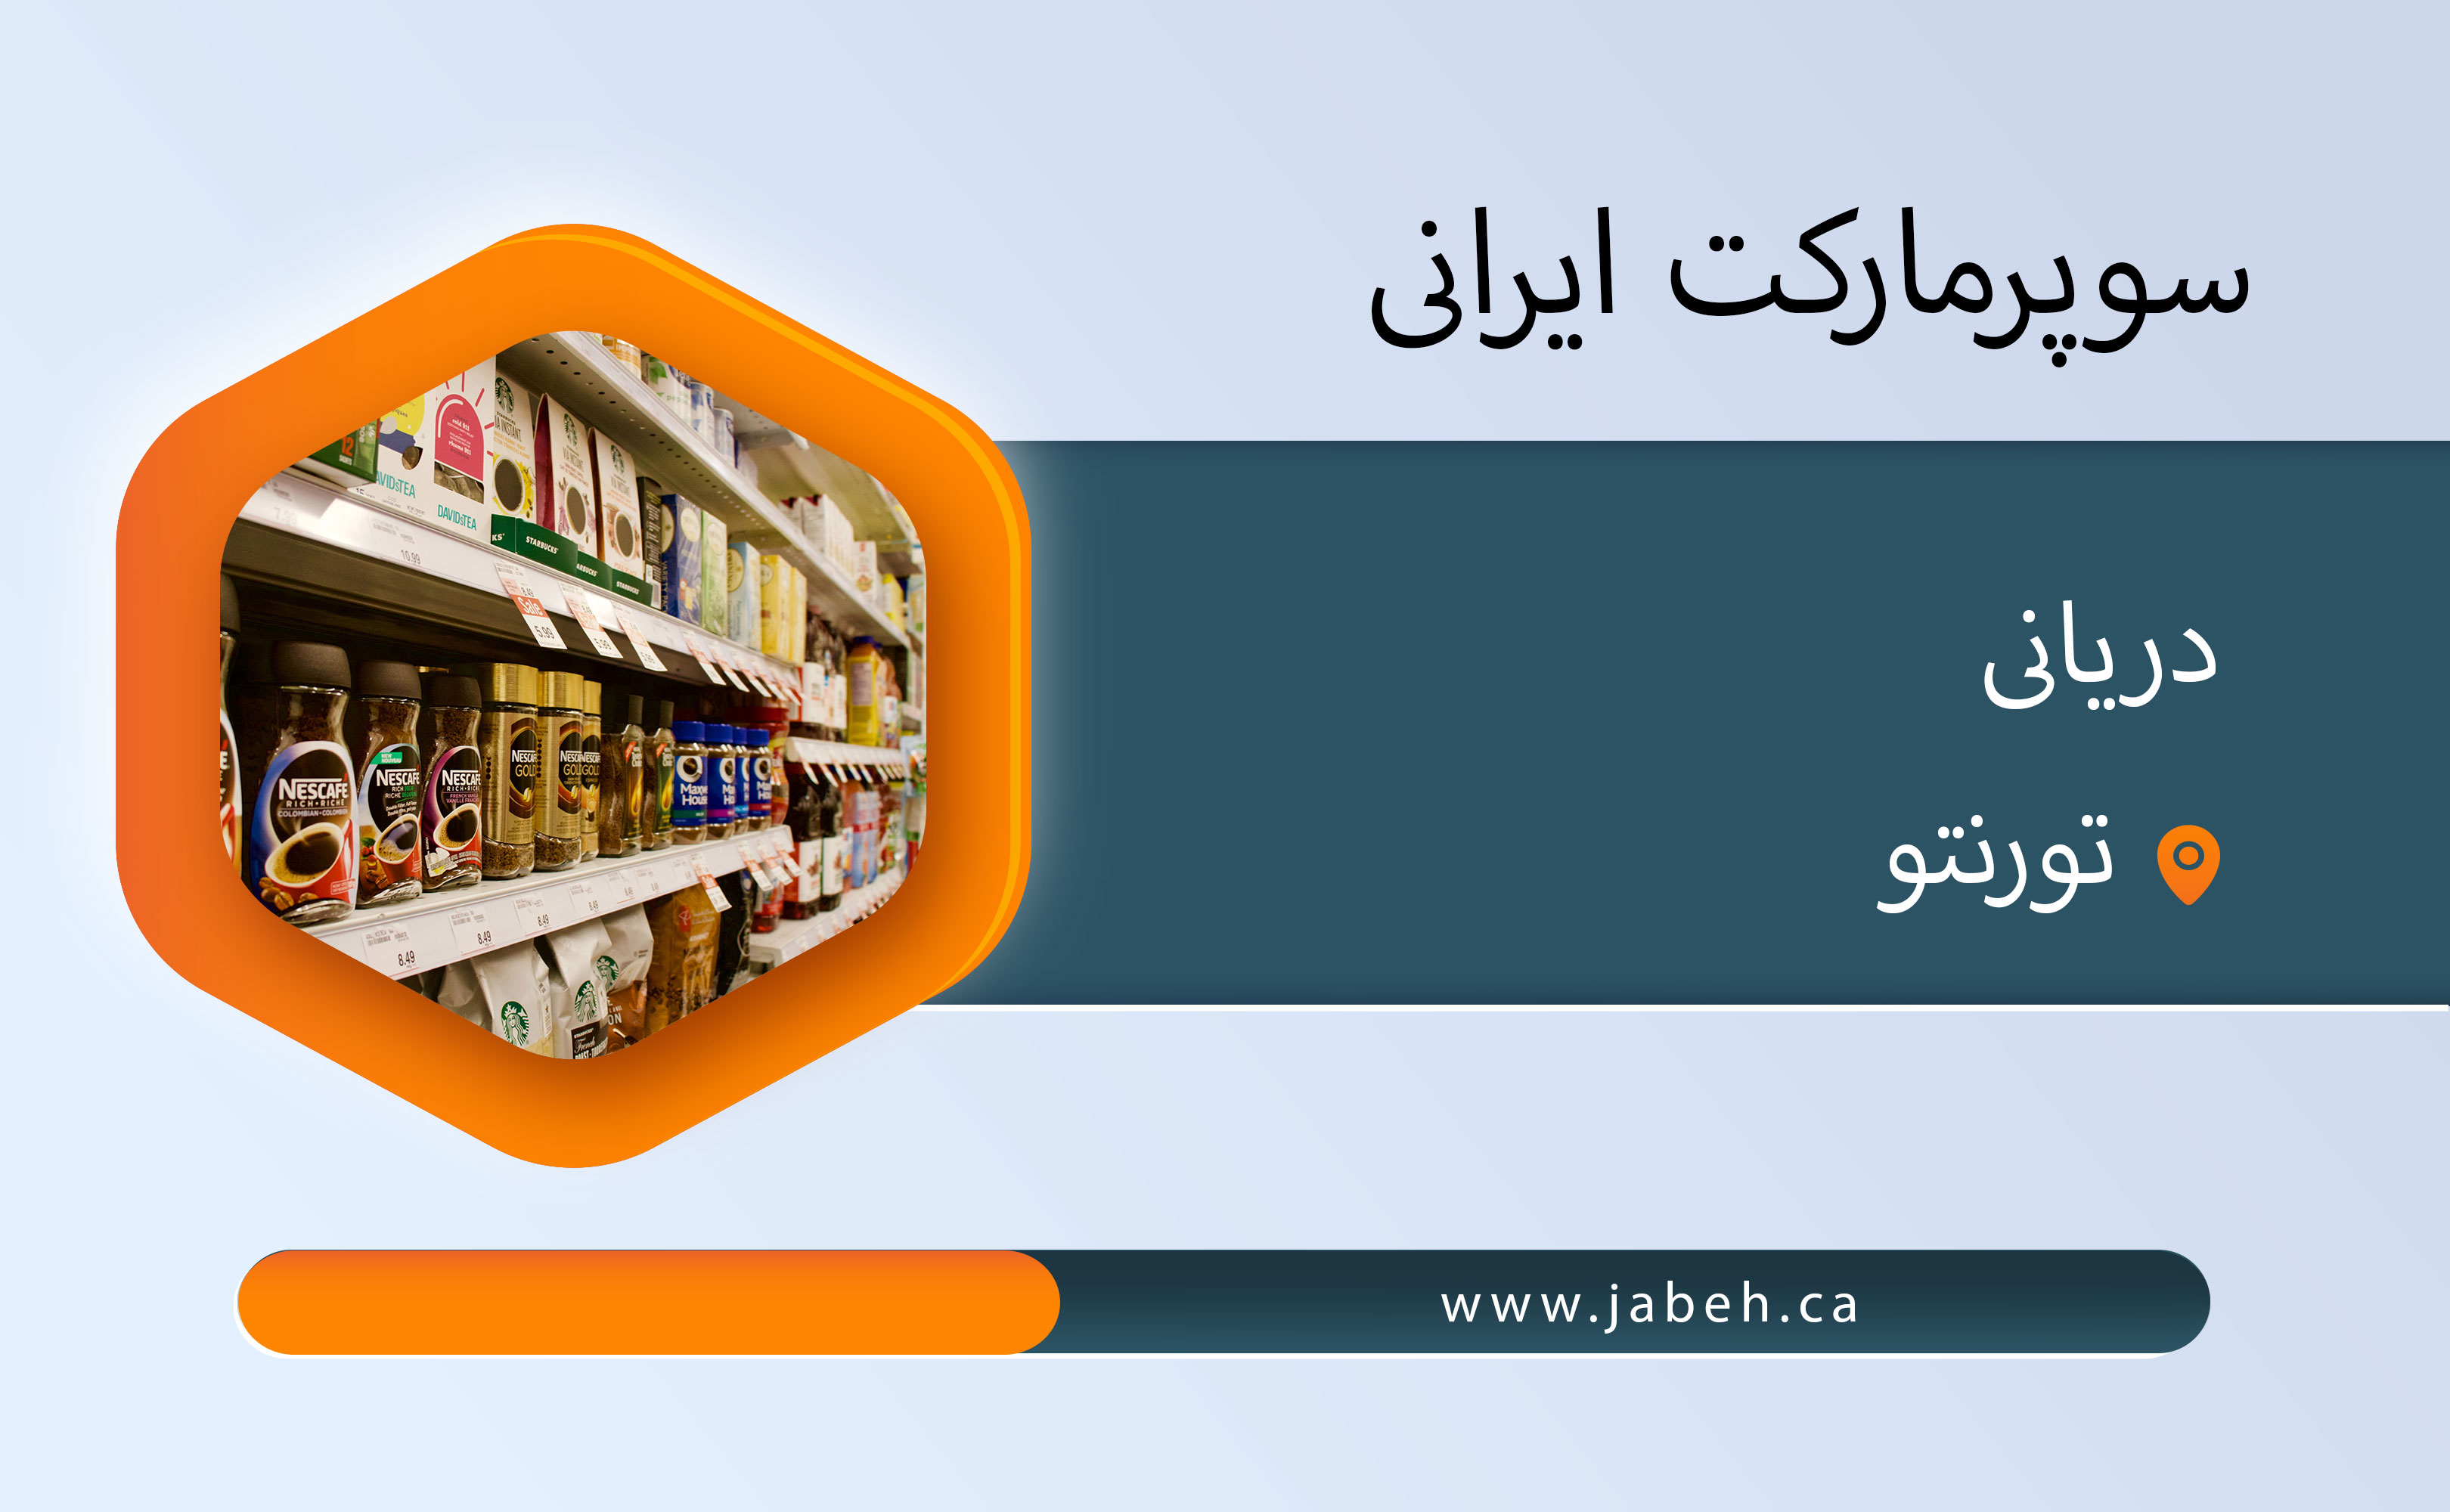 سوپرمارکت ایرانی دریانی در تورنتو